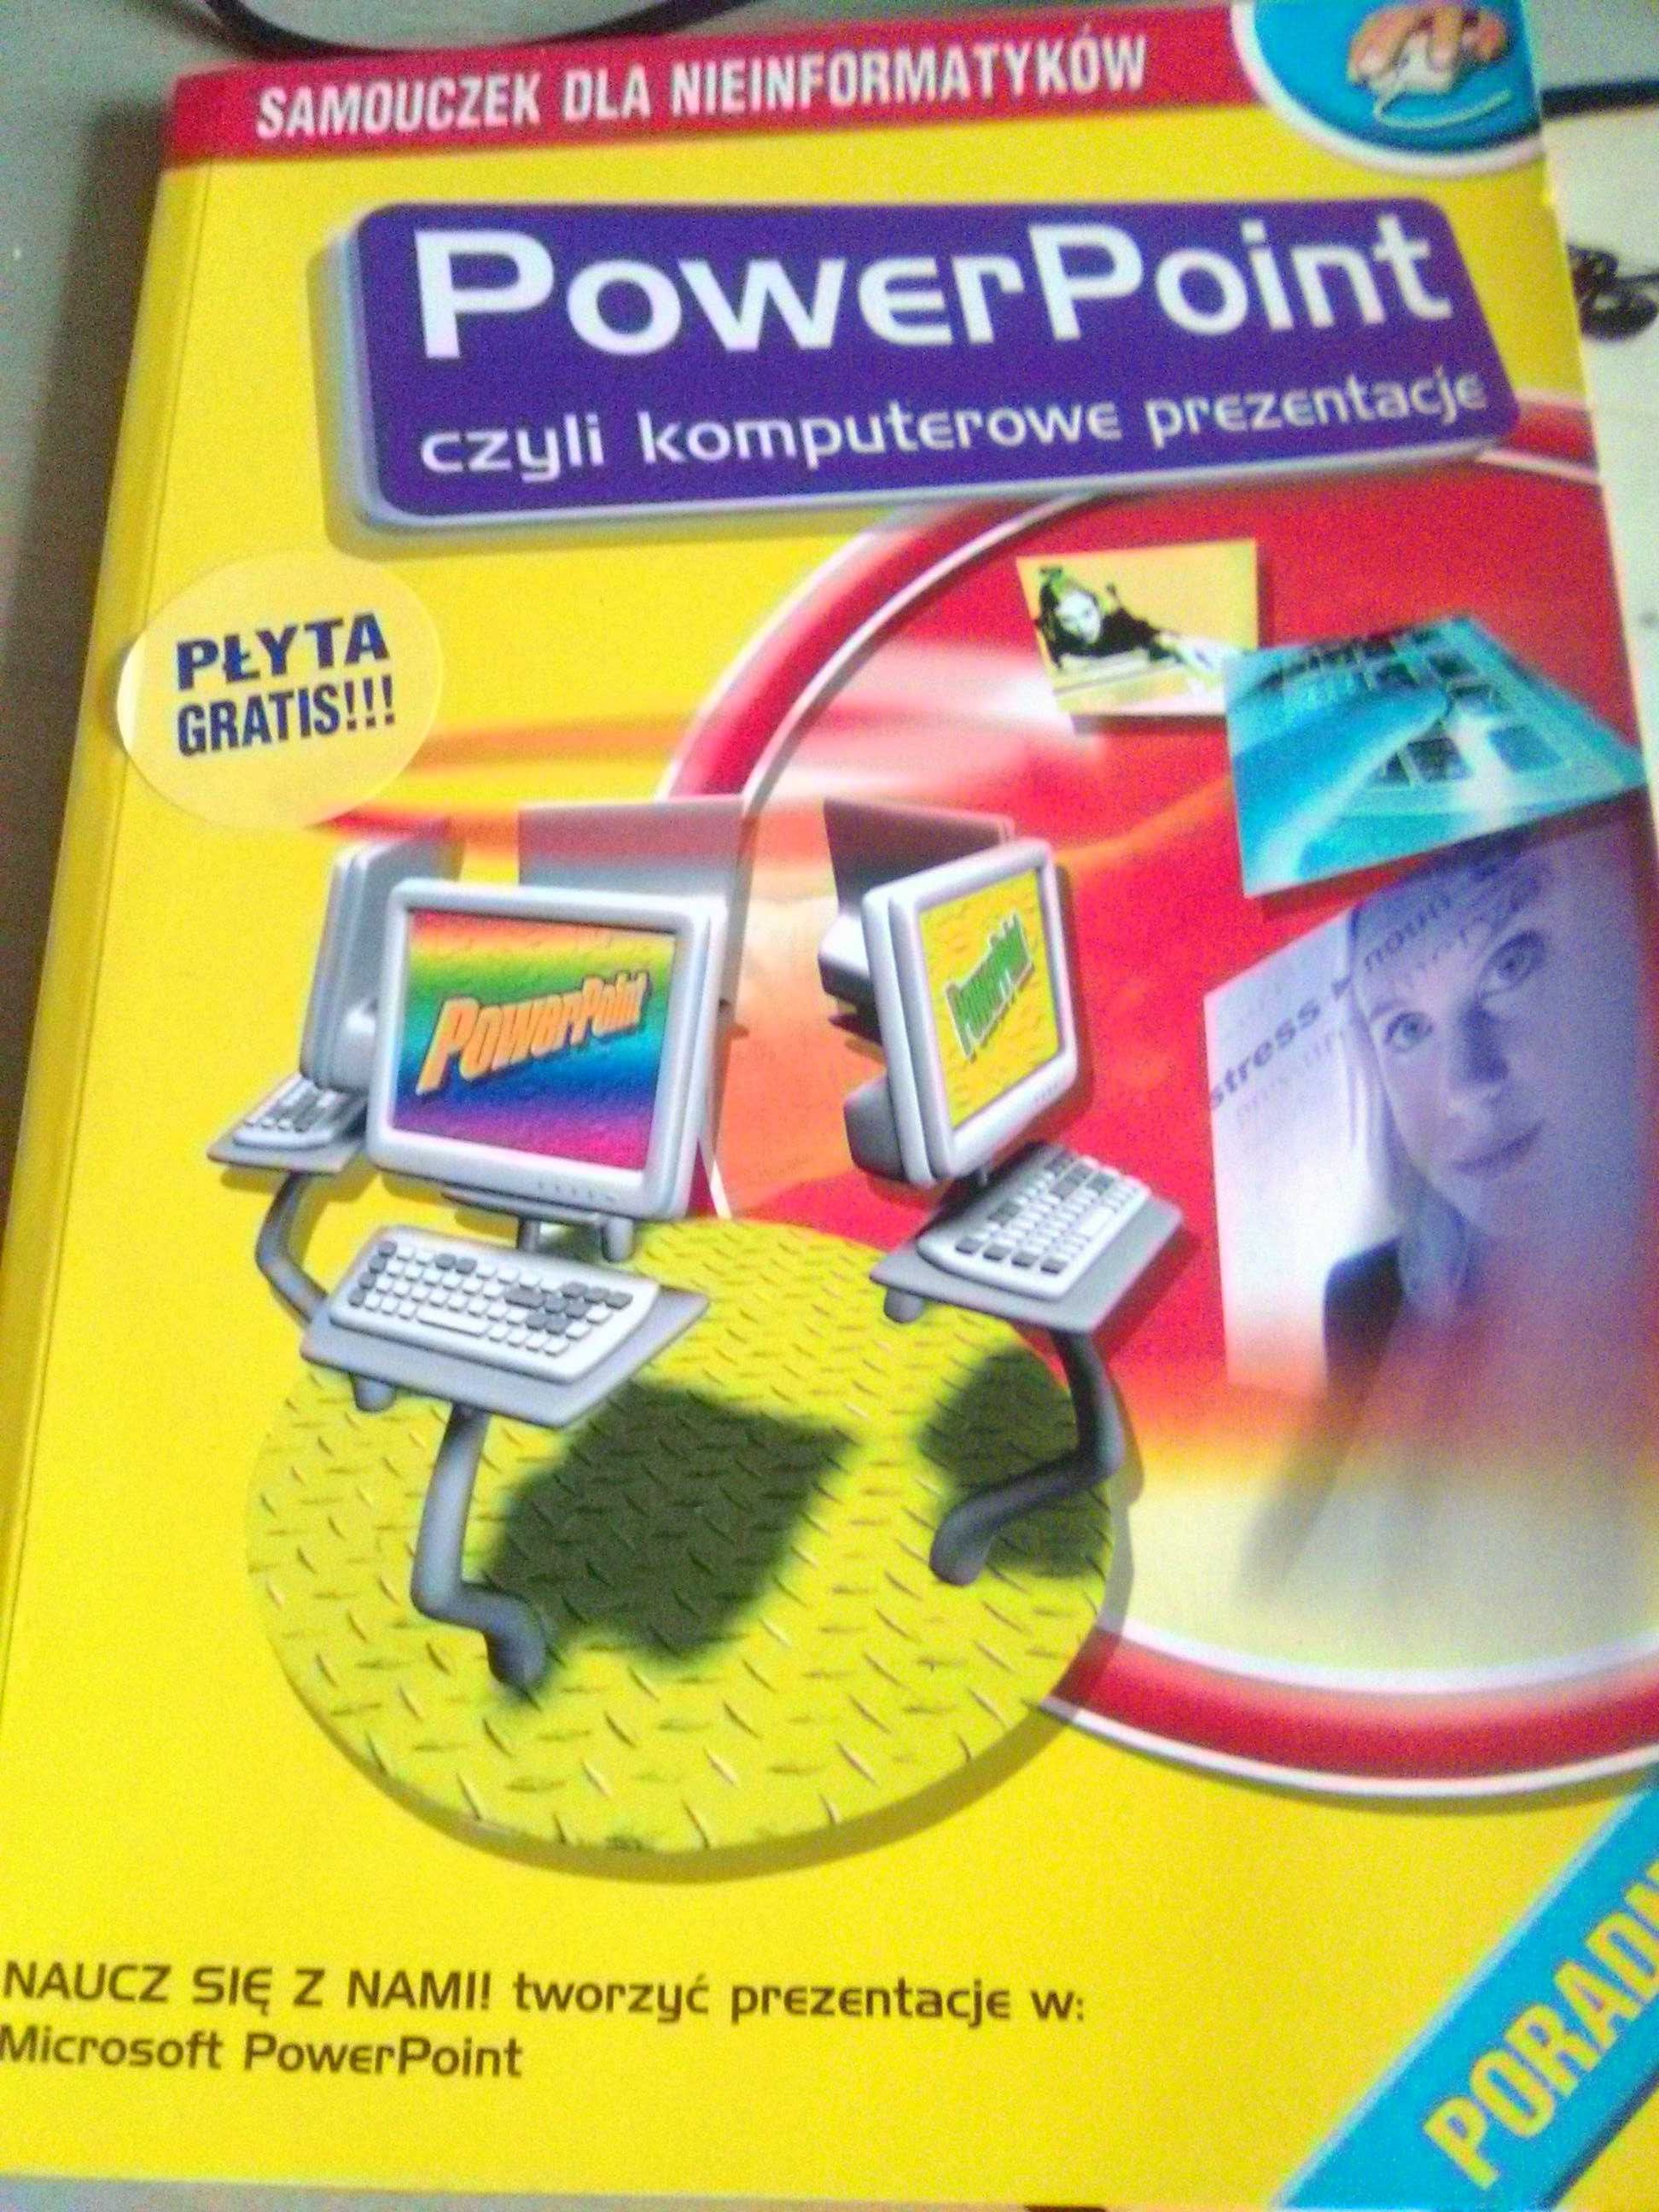 power point samouczek dla nieinformatyków książka z płytą